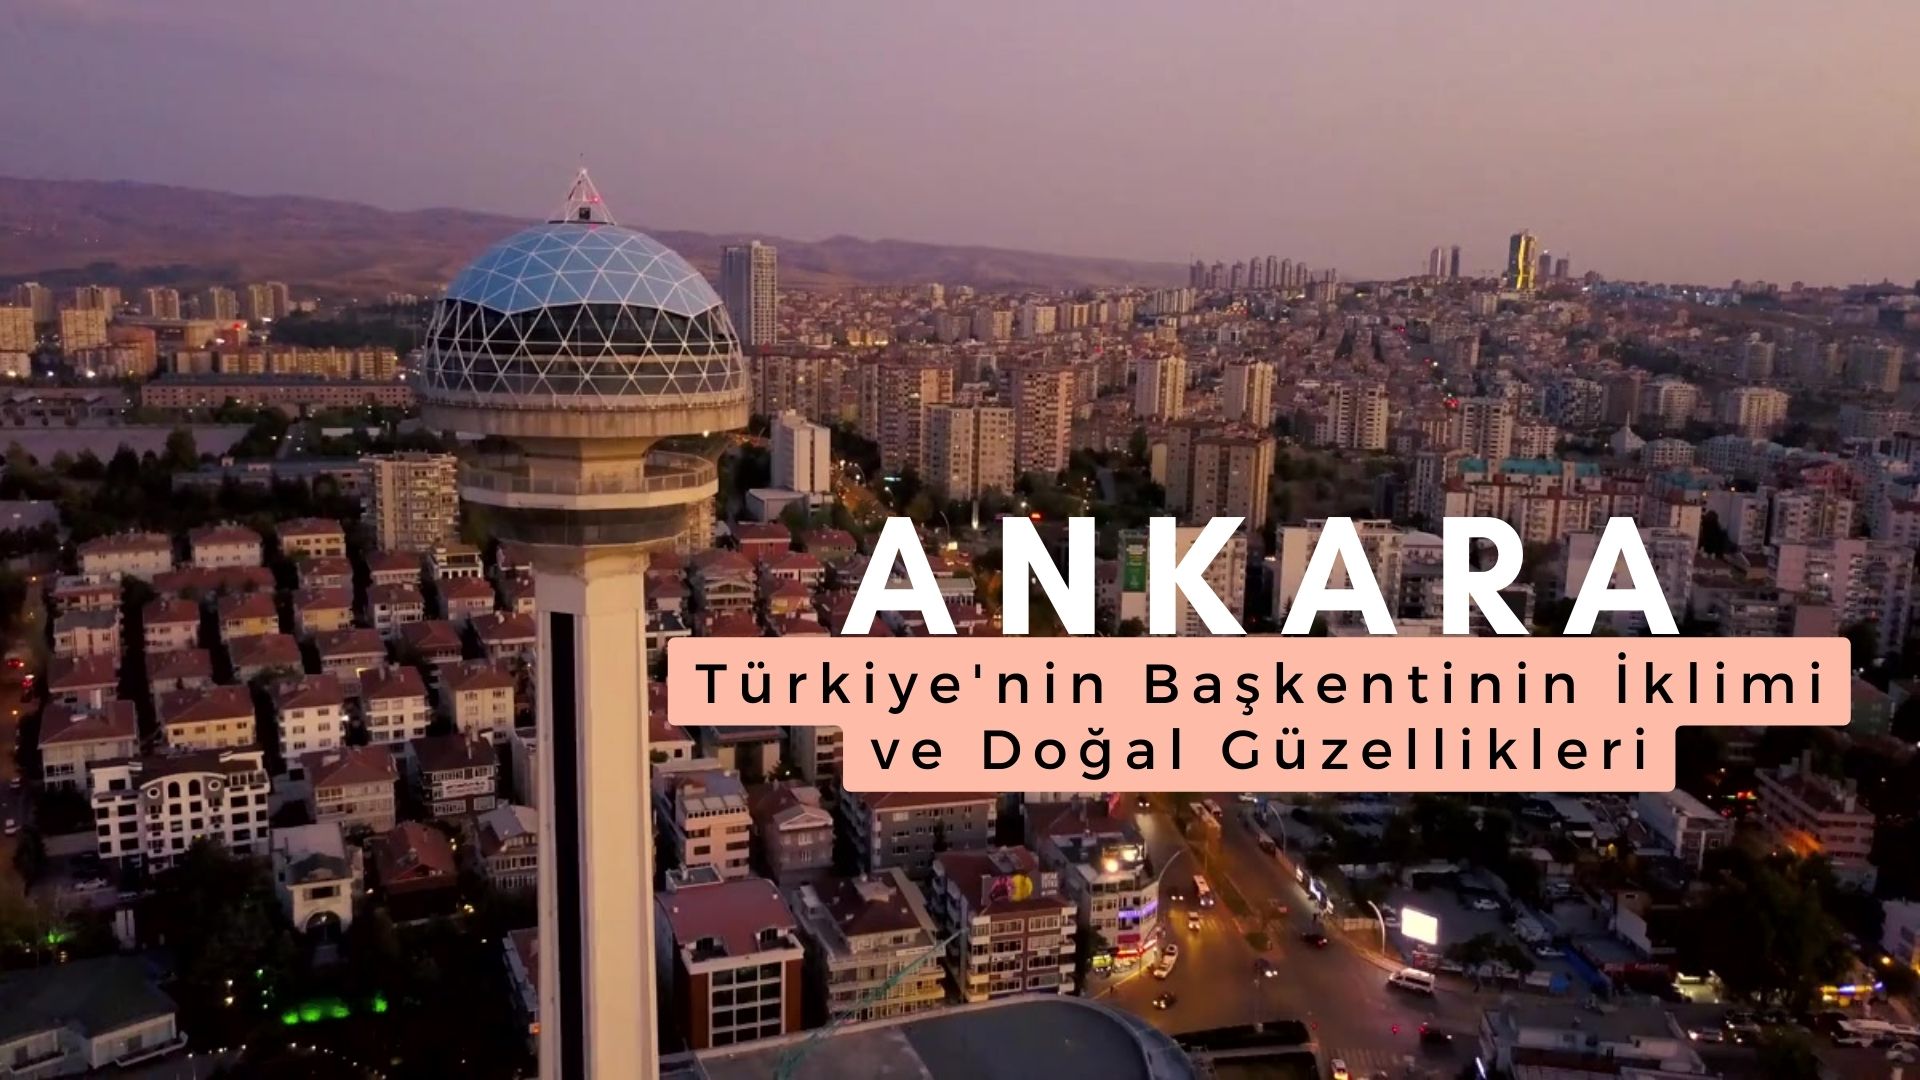 Ankara: Türkiye'nin Başkentinin İklimi ve Doğal Güzellikleri